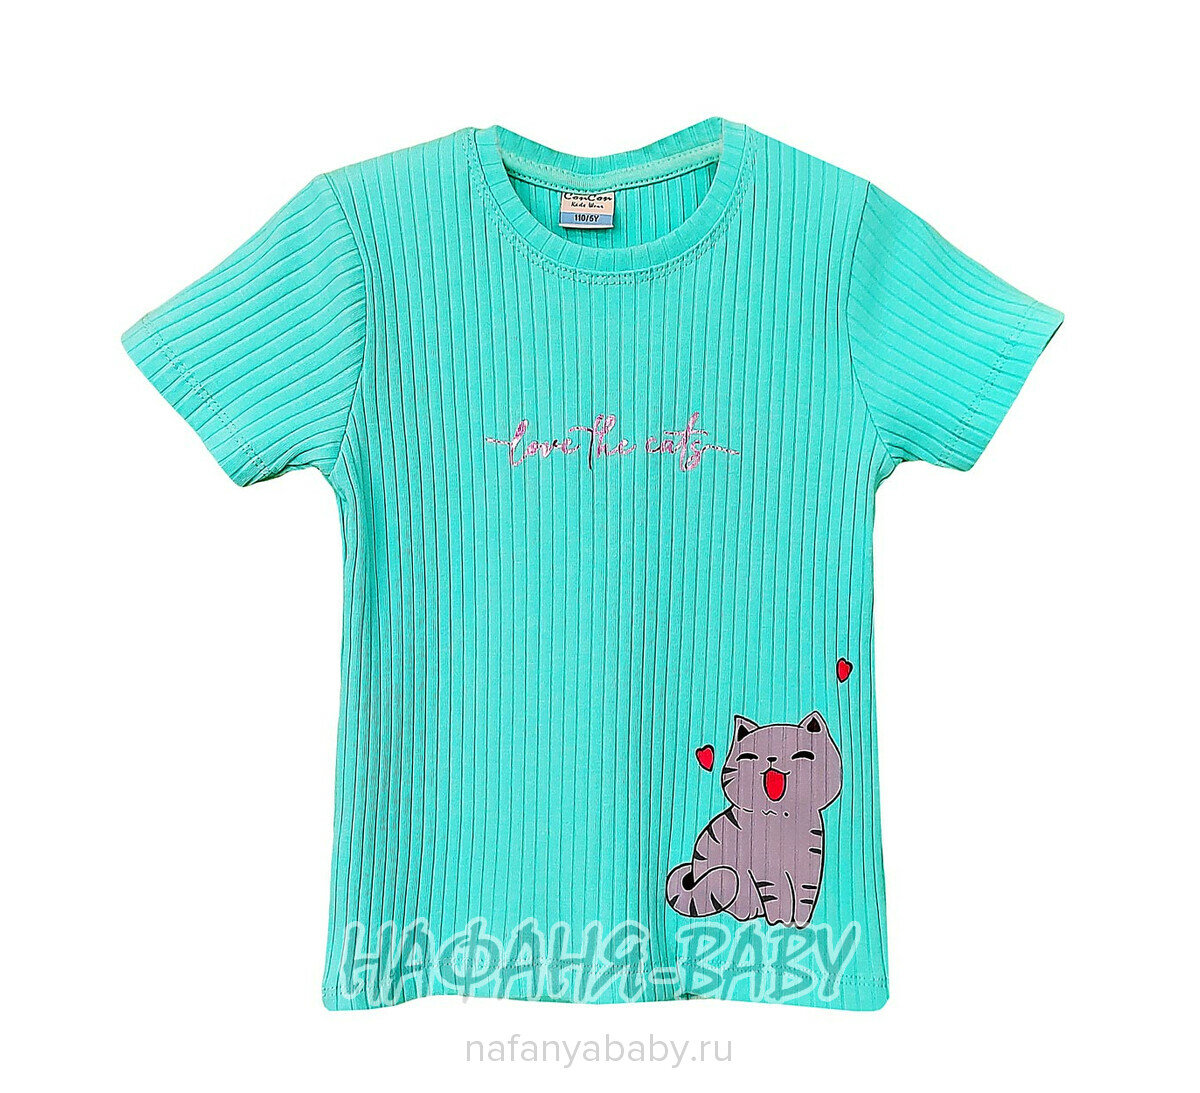 Детская футболка Con Con арт. 16369 для девочки 2-6 лет, цвет бирюзовый, оптом Турция